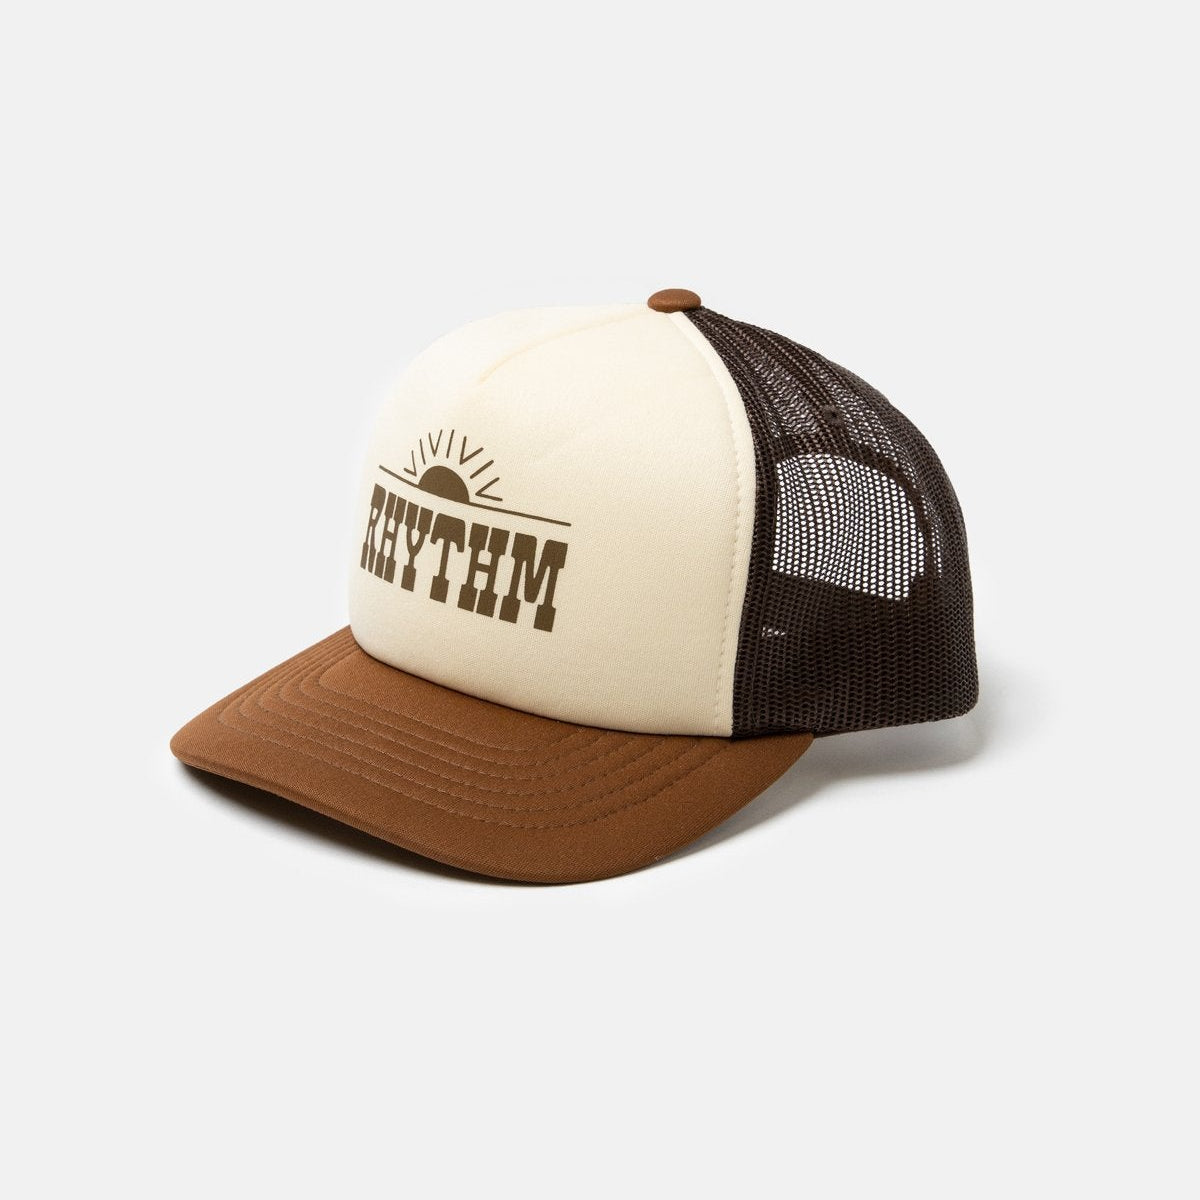 Rhythm Western Trucker Caps